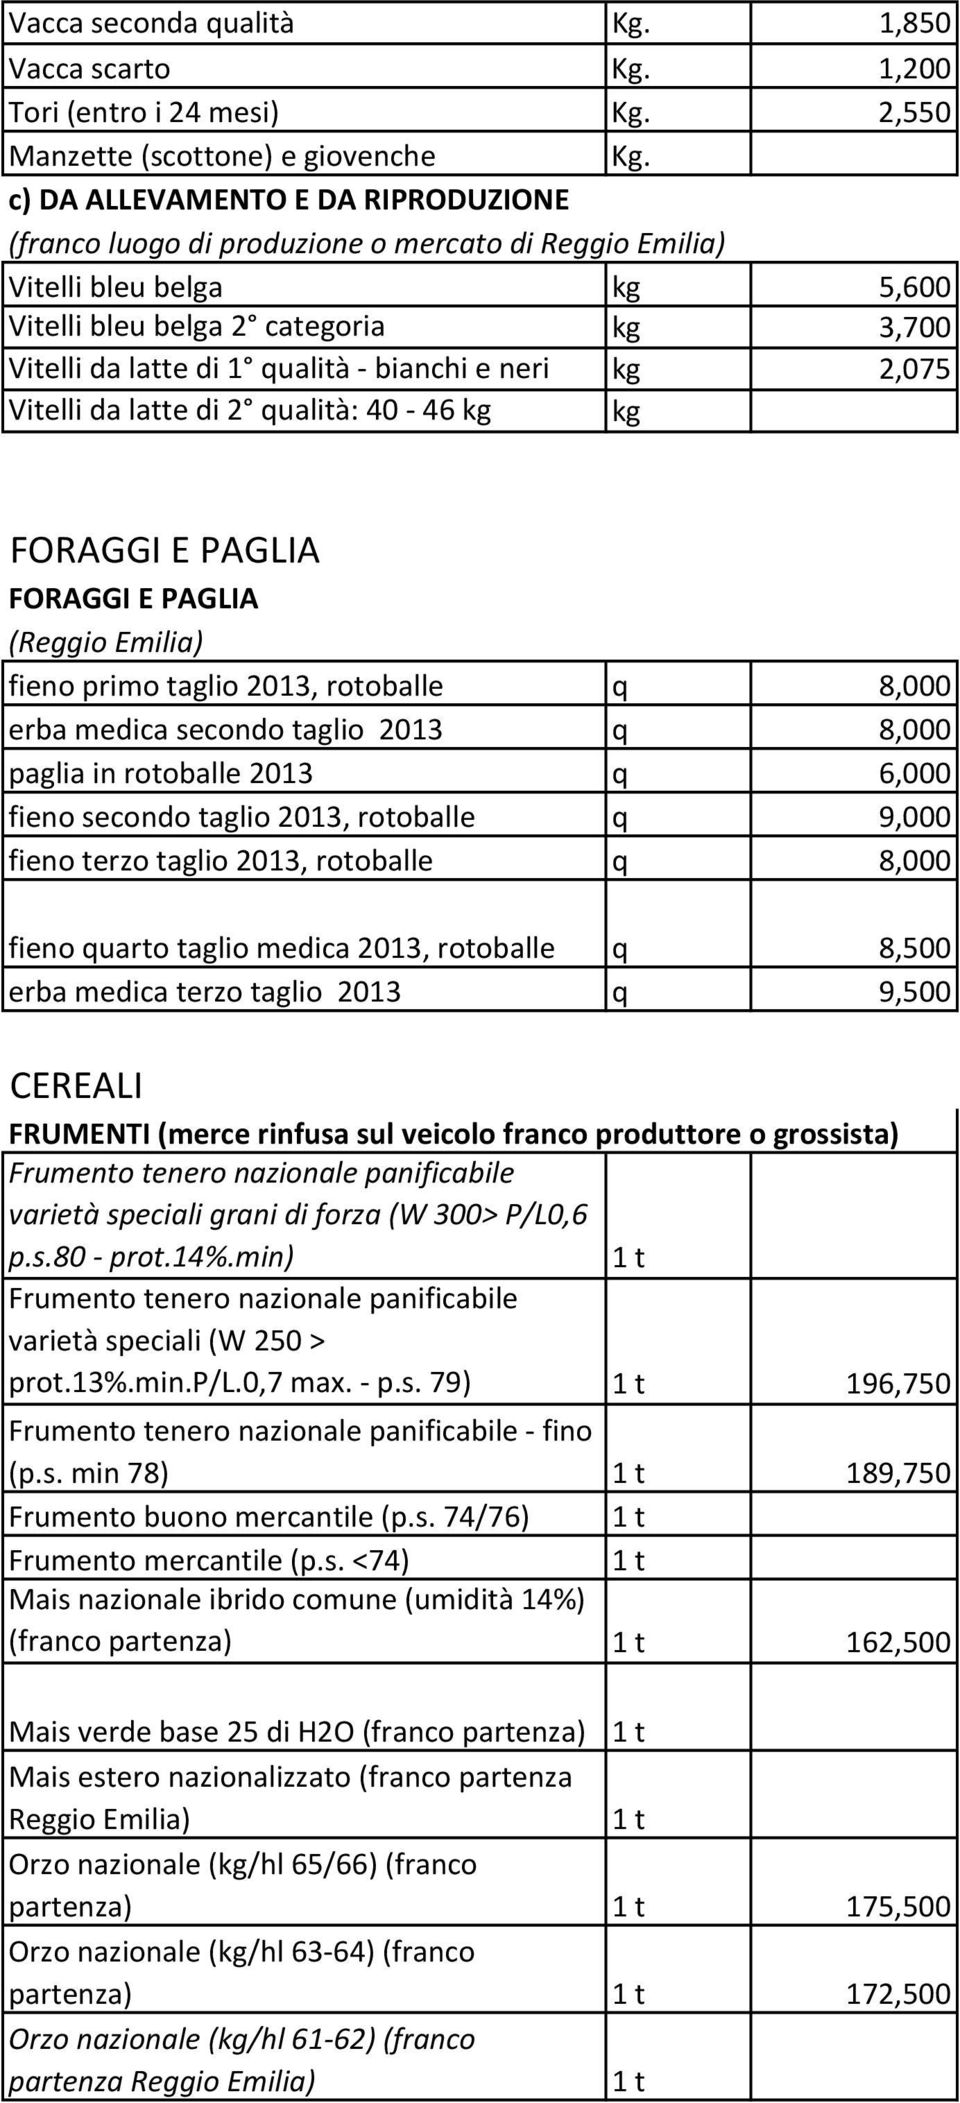 e neri kg 2,075 Vitelli da latte di 2 qualità: 40-46 kg kg FORAGGI E PAGLIA FORAGGI E PAGLIA (Reggio Emilia) fieno primo taglio 2013, rotoballe q 8,000 erba medica secondo taglio 2013 q 8,000 paglia